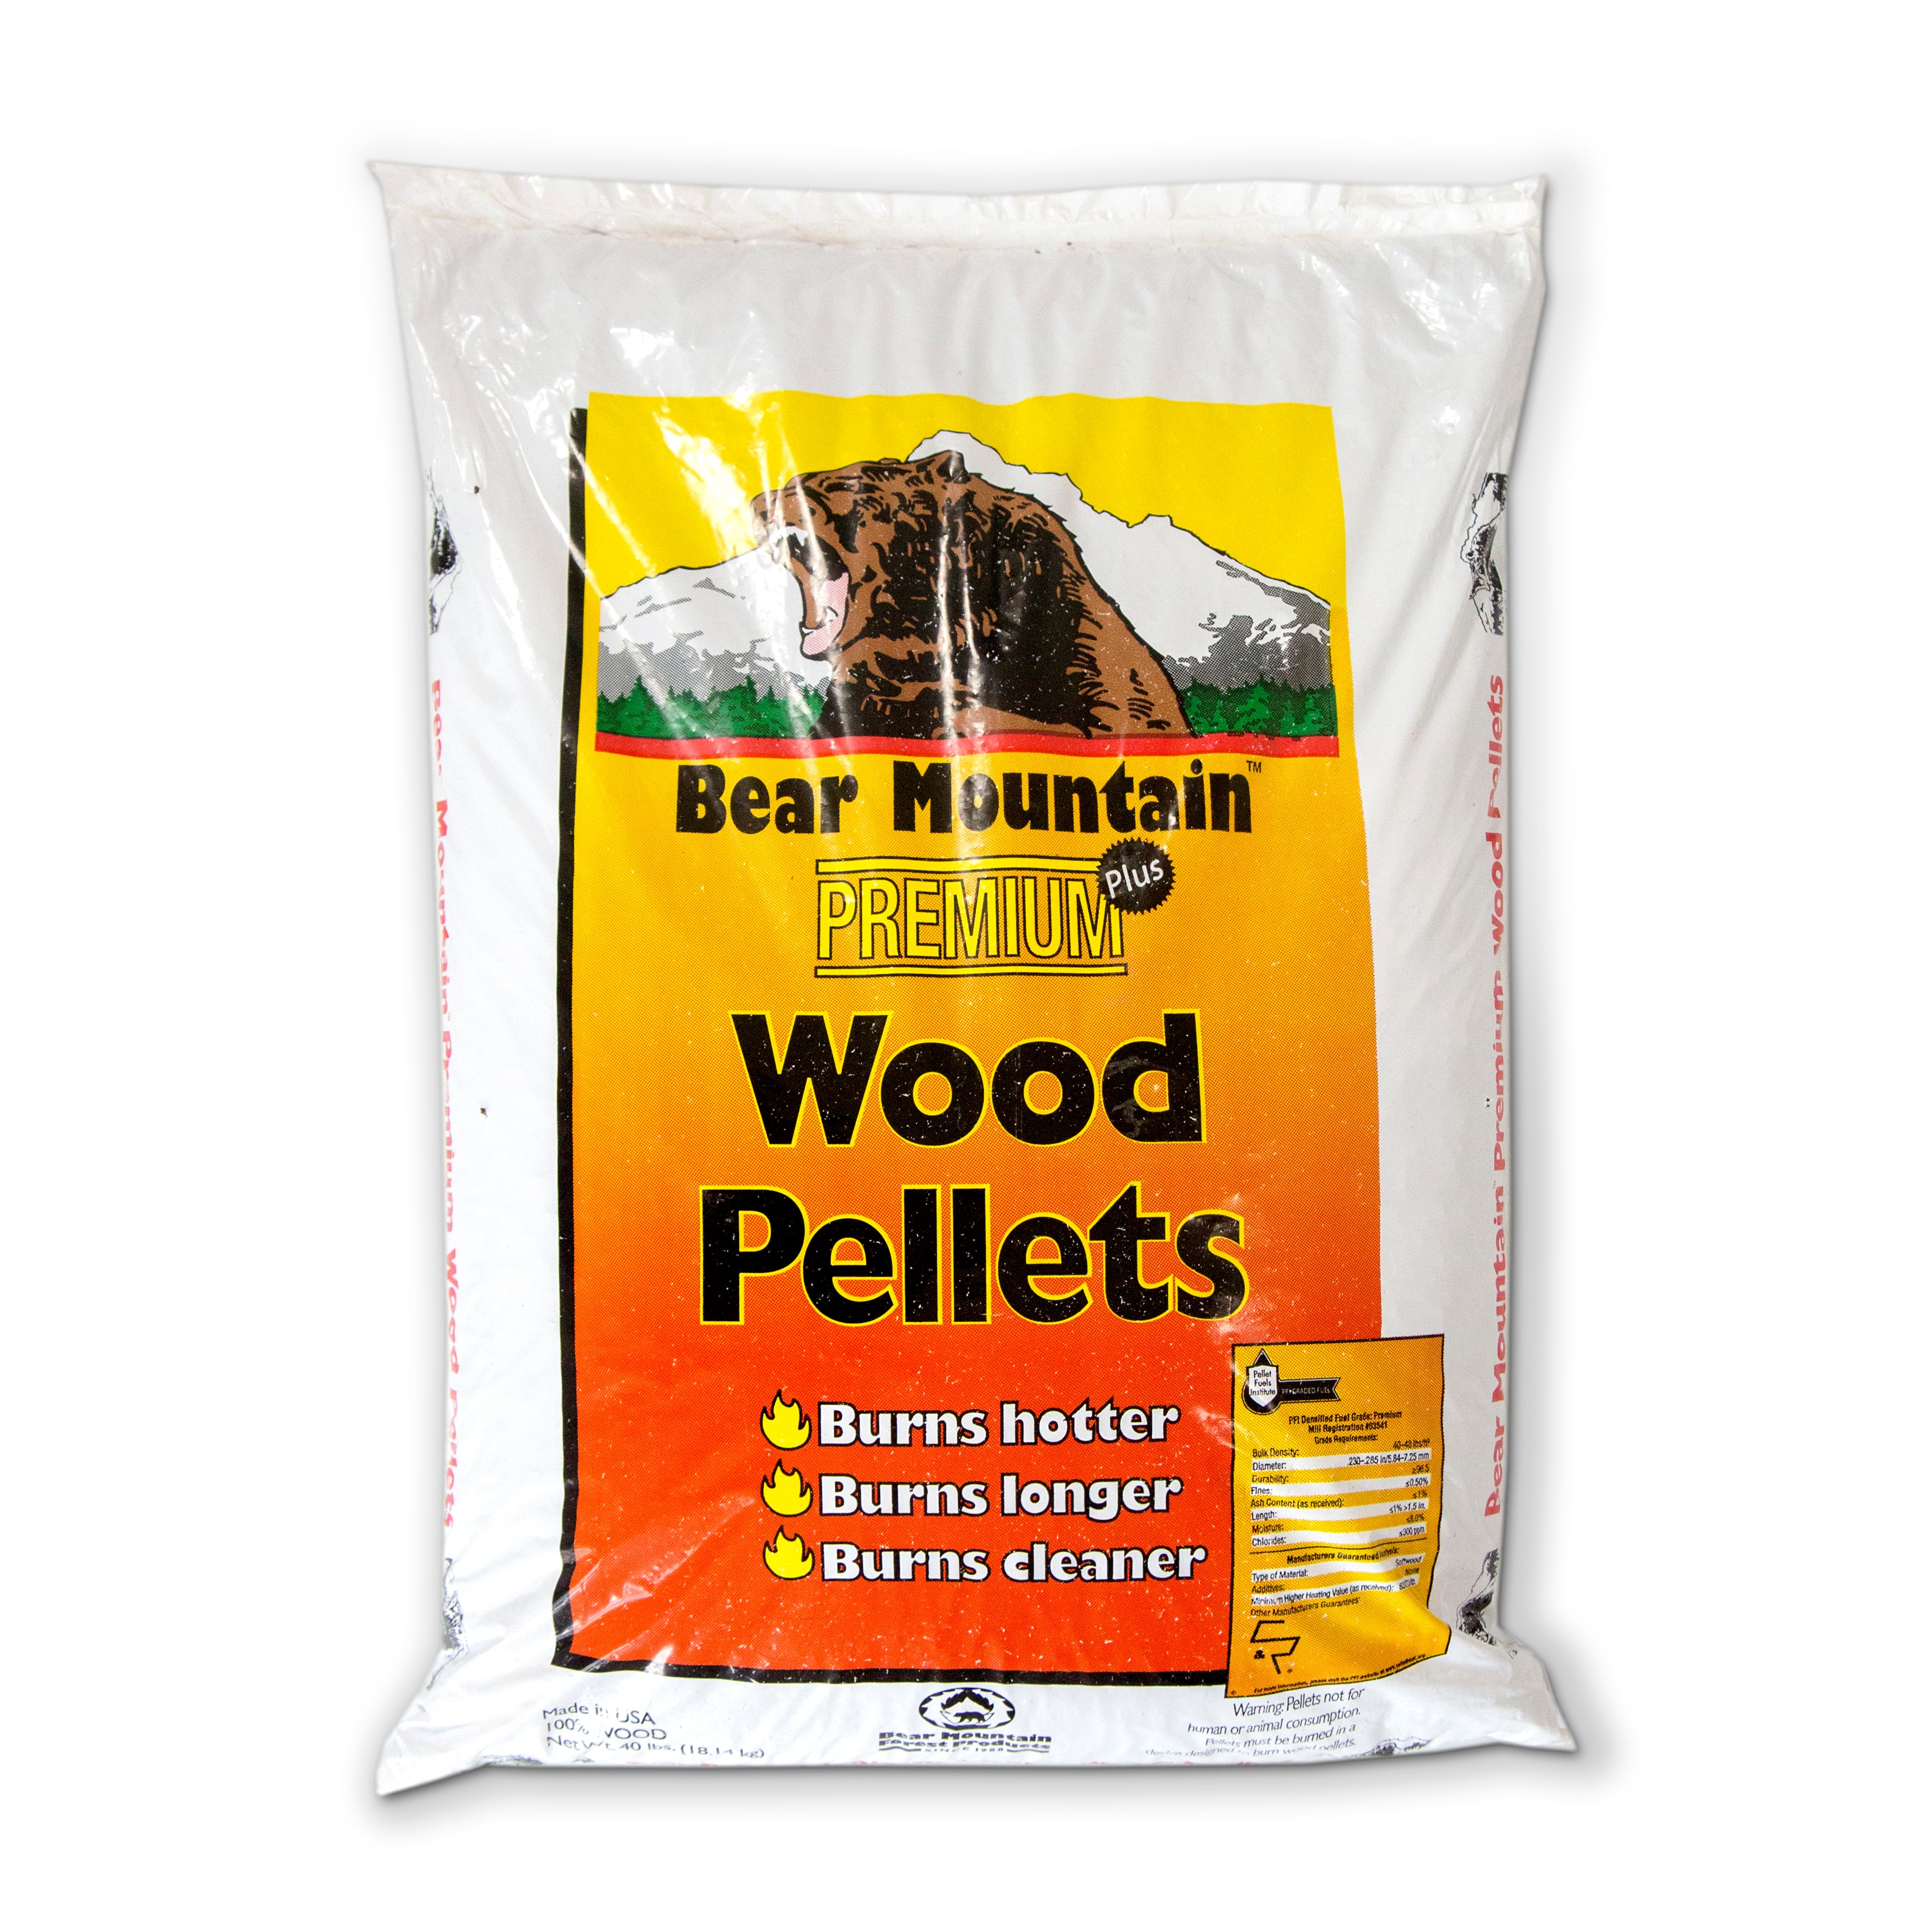 Bear Mountain Premium Wood Fuel Pellets Renewable Hot And Efficient Lignetics